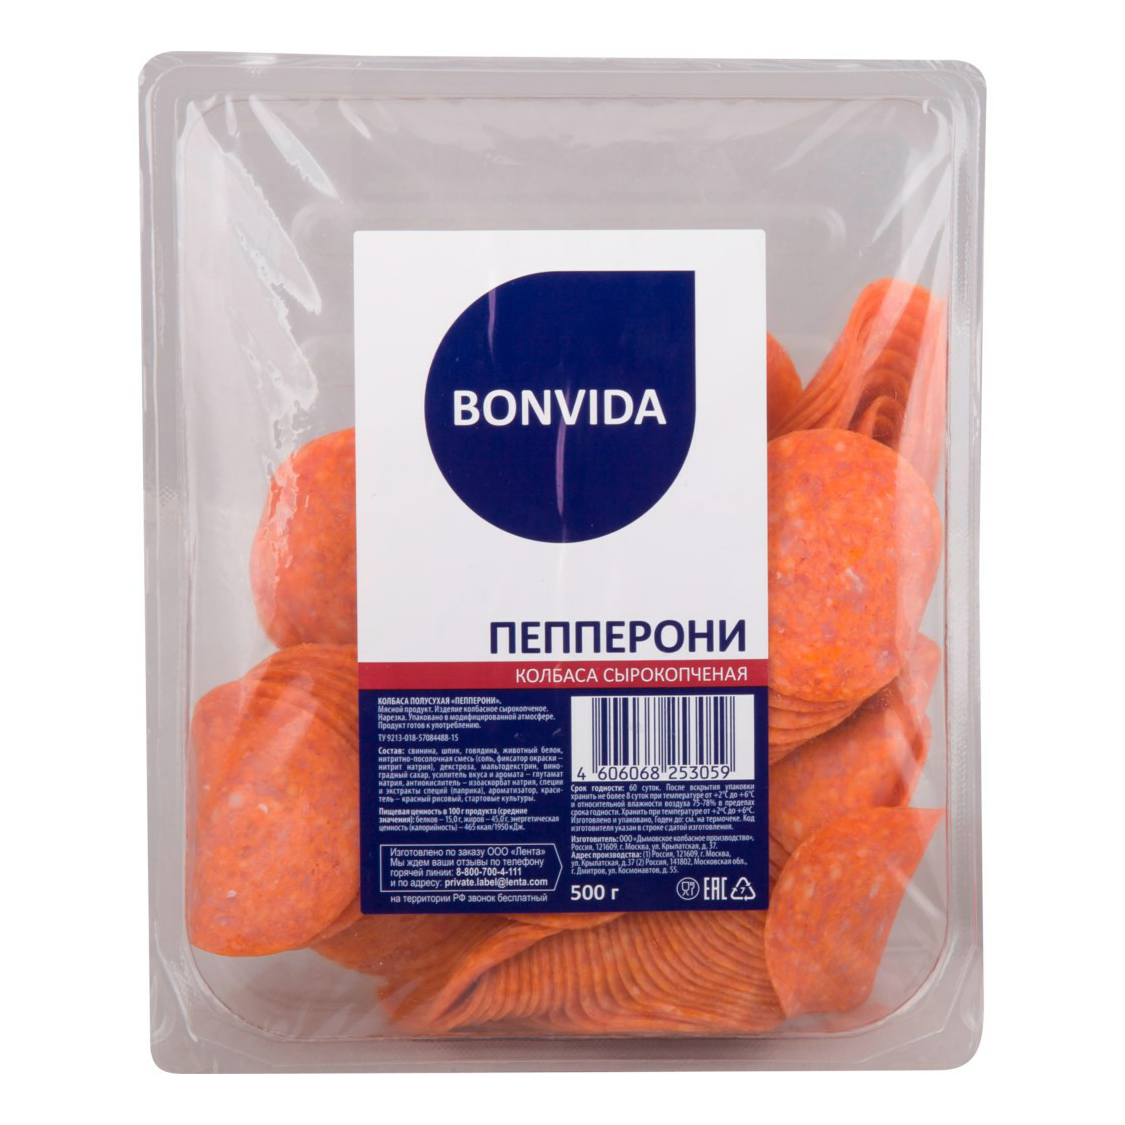 Купить колбаса Bonvida Пепперони полусухая сырокопченая 500 г, цены на Мегамаркет | Артикул: 100028791922